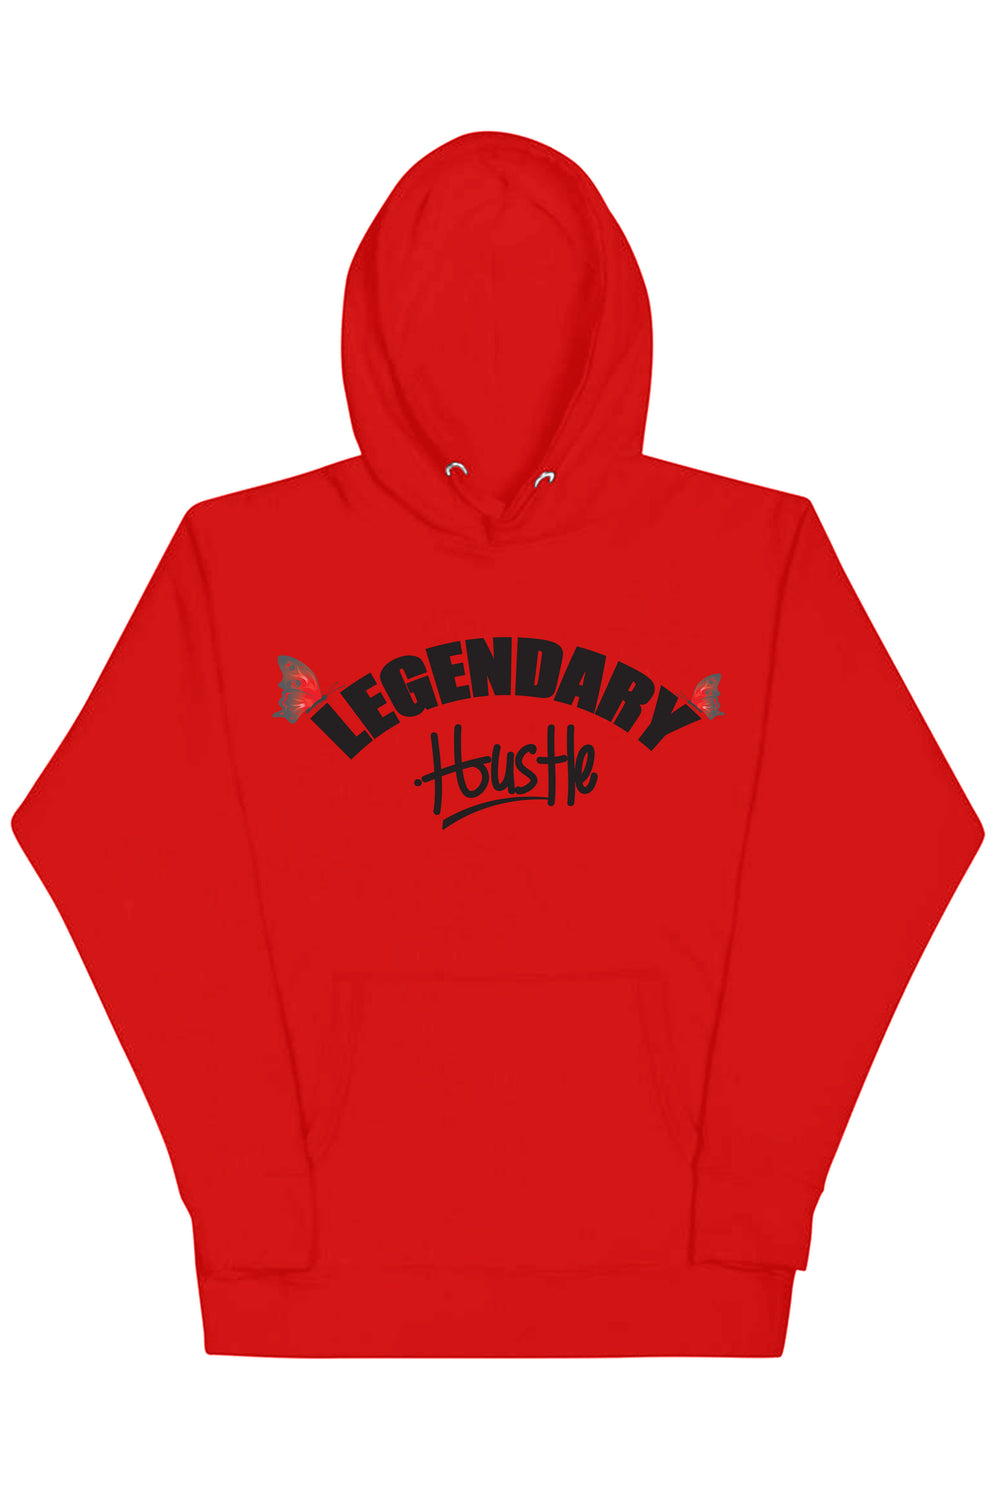 Legendary Hustle Hoodie (Black Logo) - Zamage